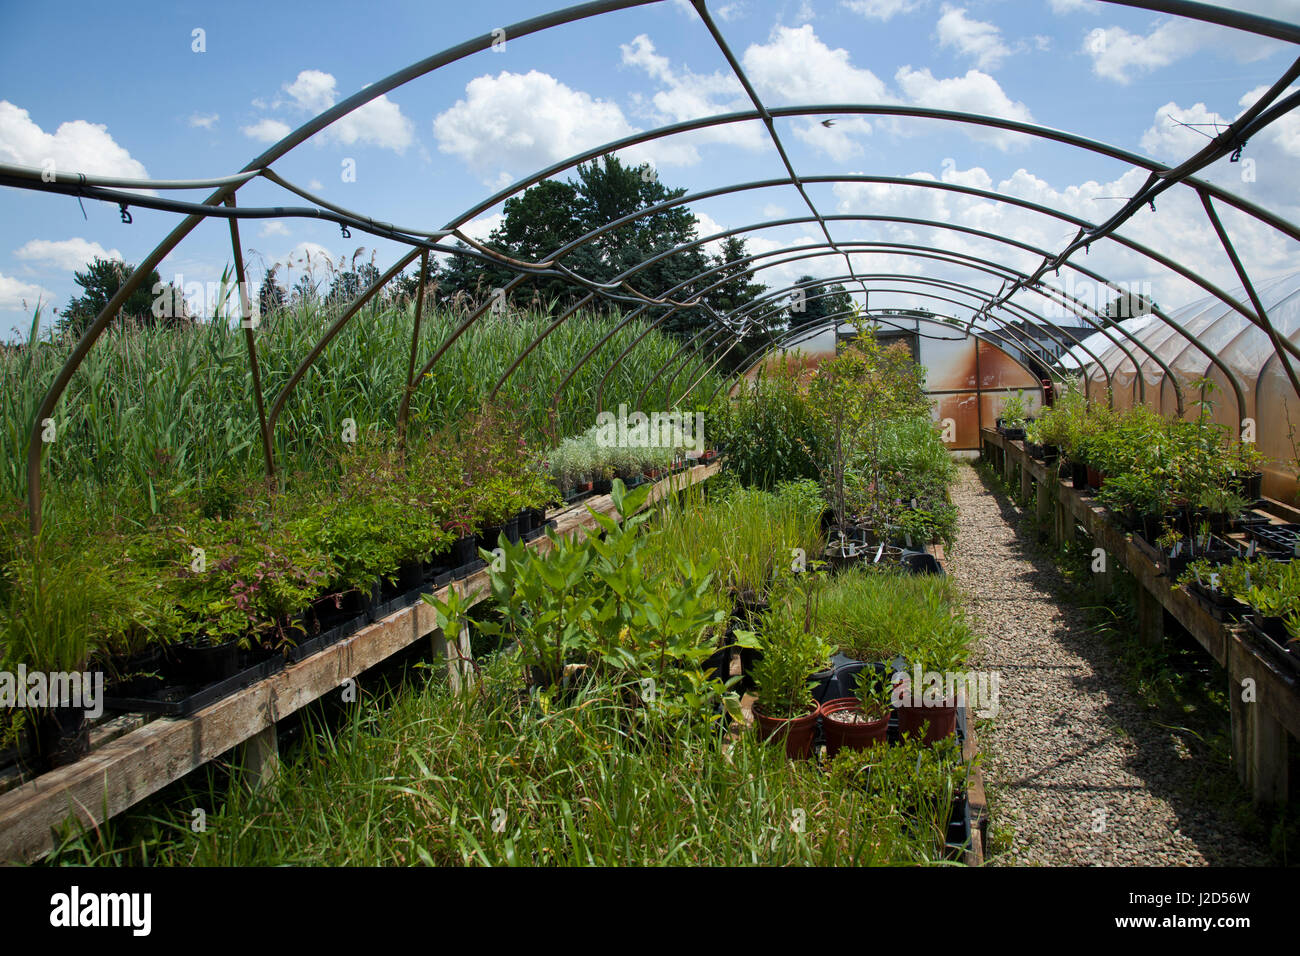 Sweet Grass Gardens Nursery porte plusieurs rares ou difficiles à trouver des espèces de plantes qui sont cultivées dans de grandes maisons vertes. Six Nations de la rivière Grand, réservation d'Ohsweken (Ontario) Canada Banque D'Images